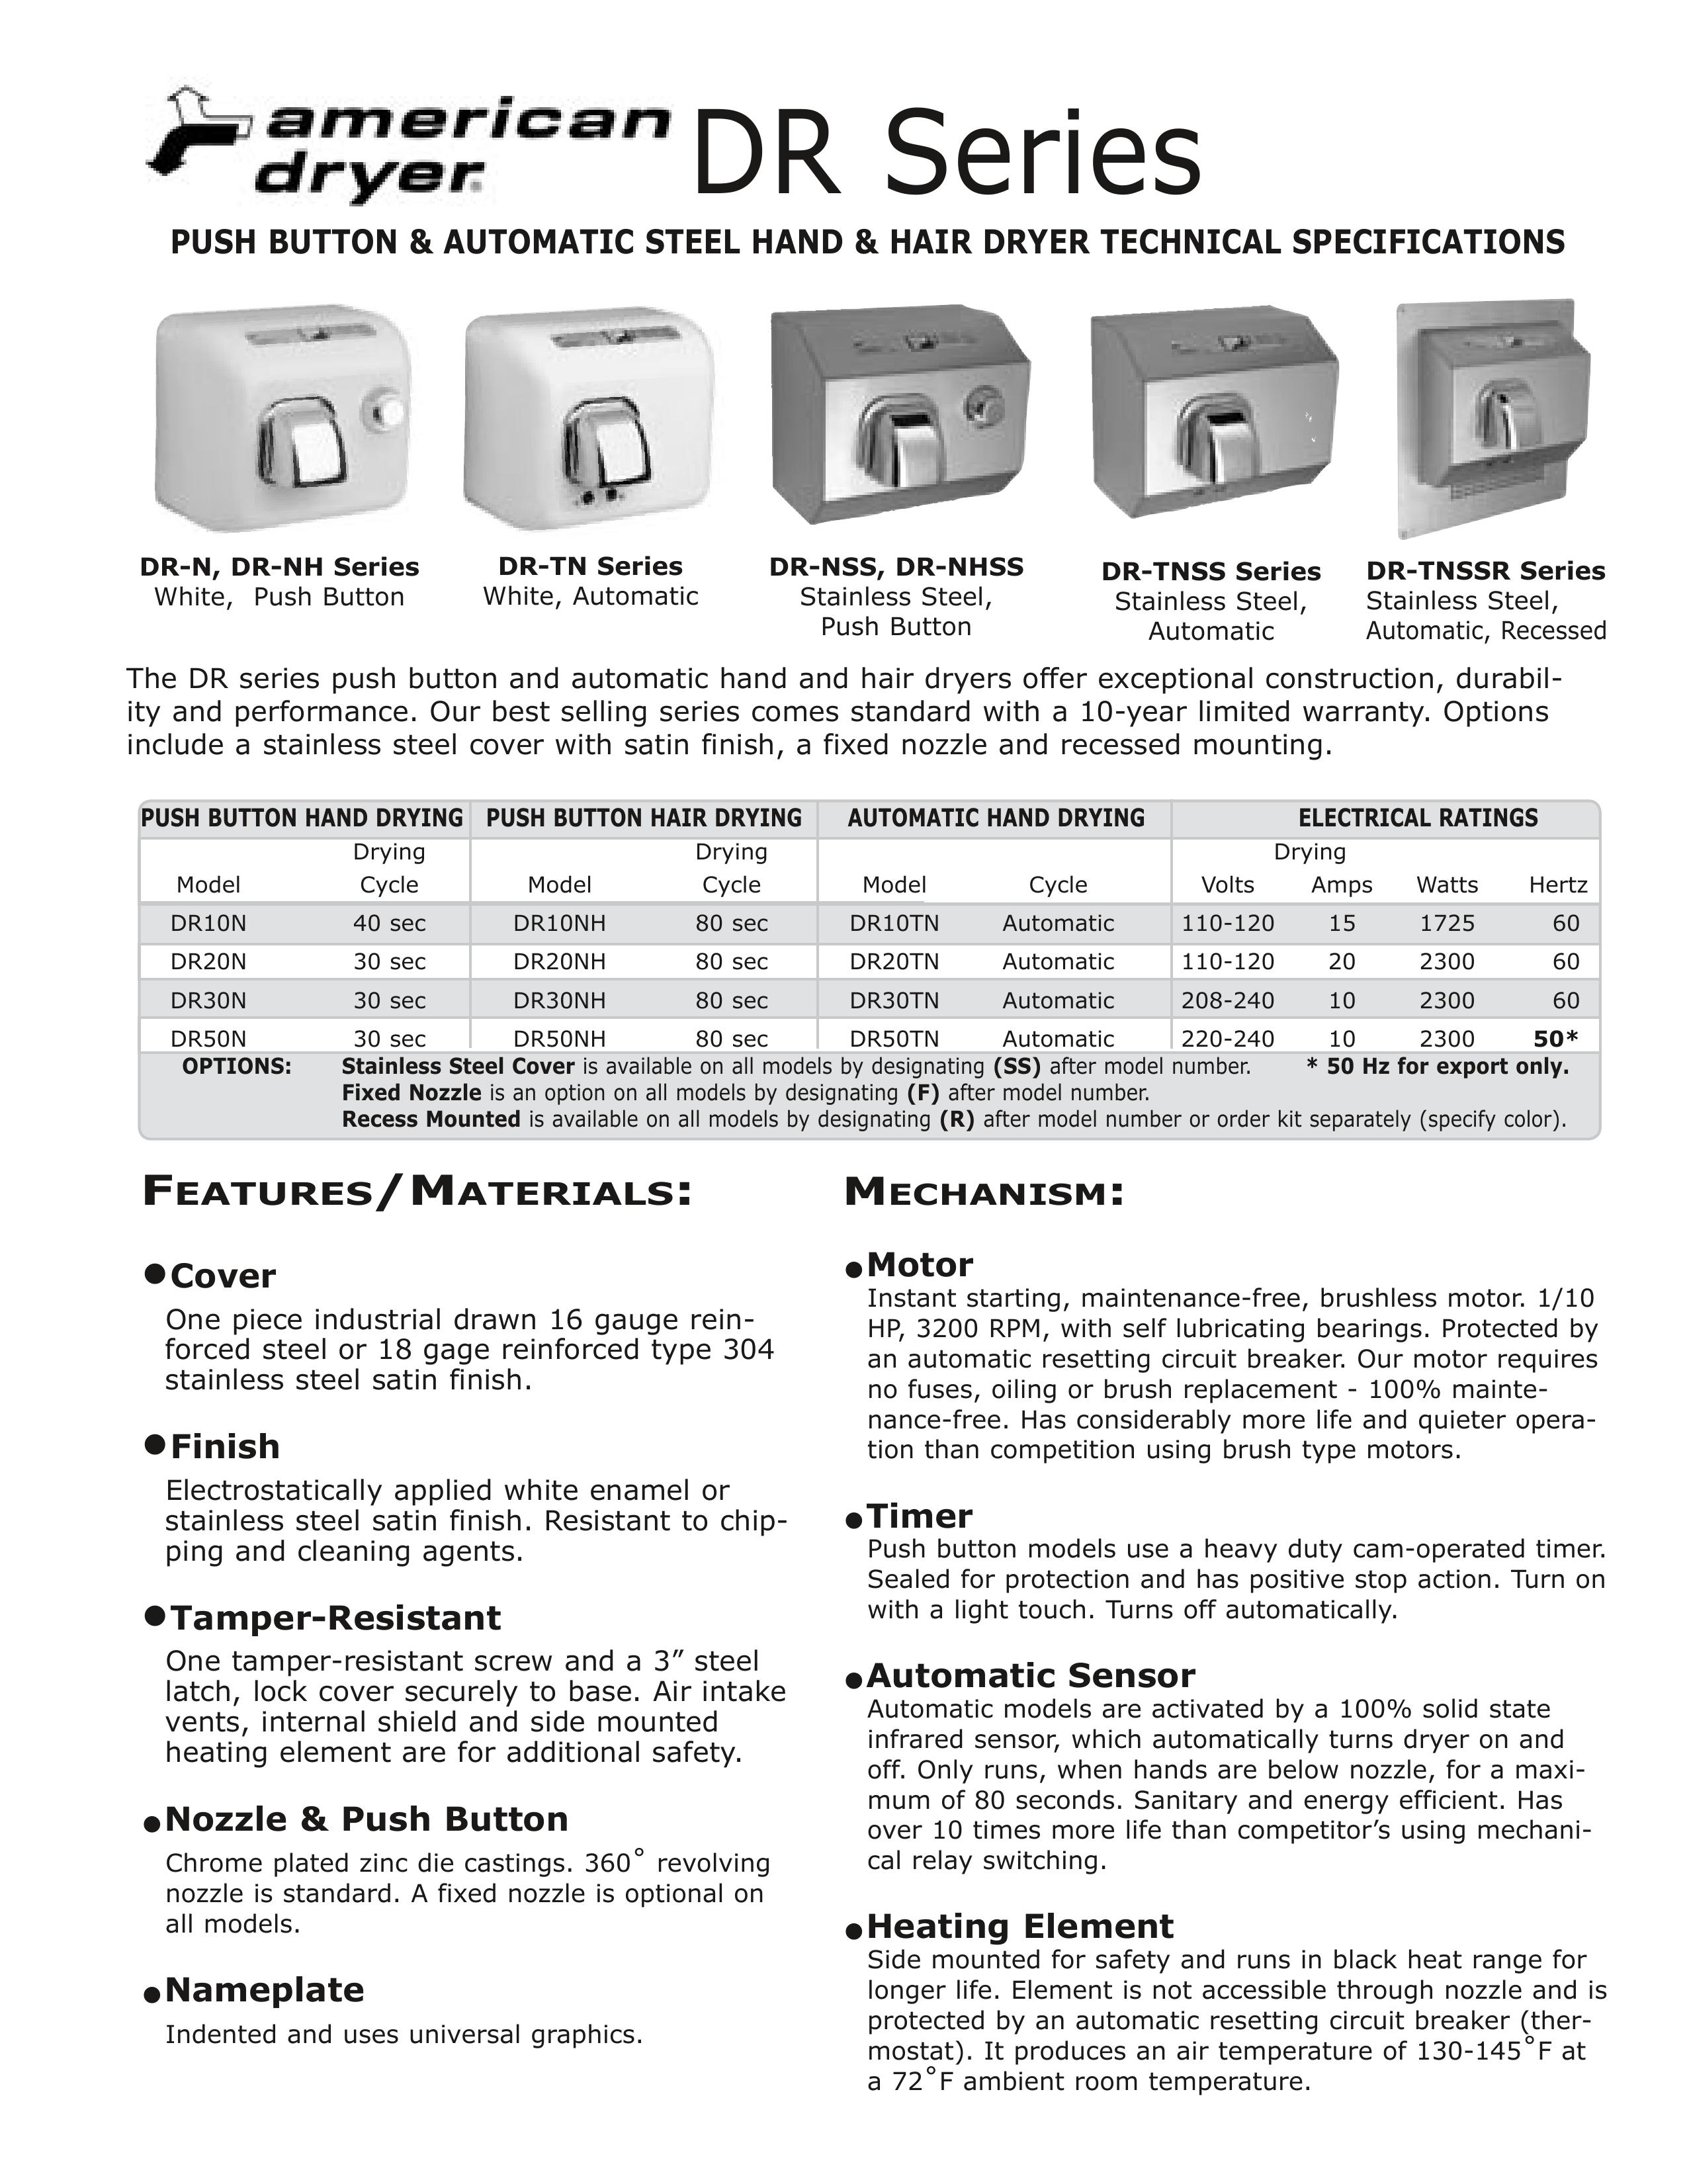 American Dryer DR-N Hair Dryer User Manual